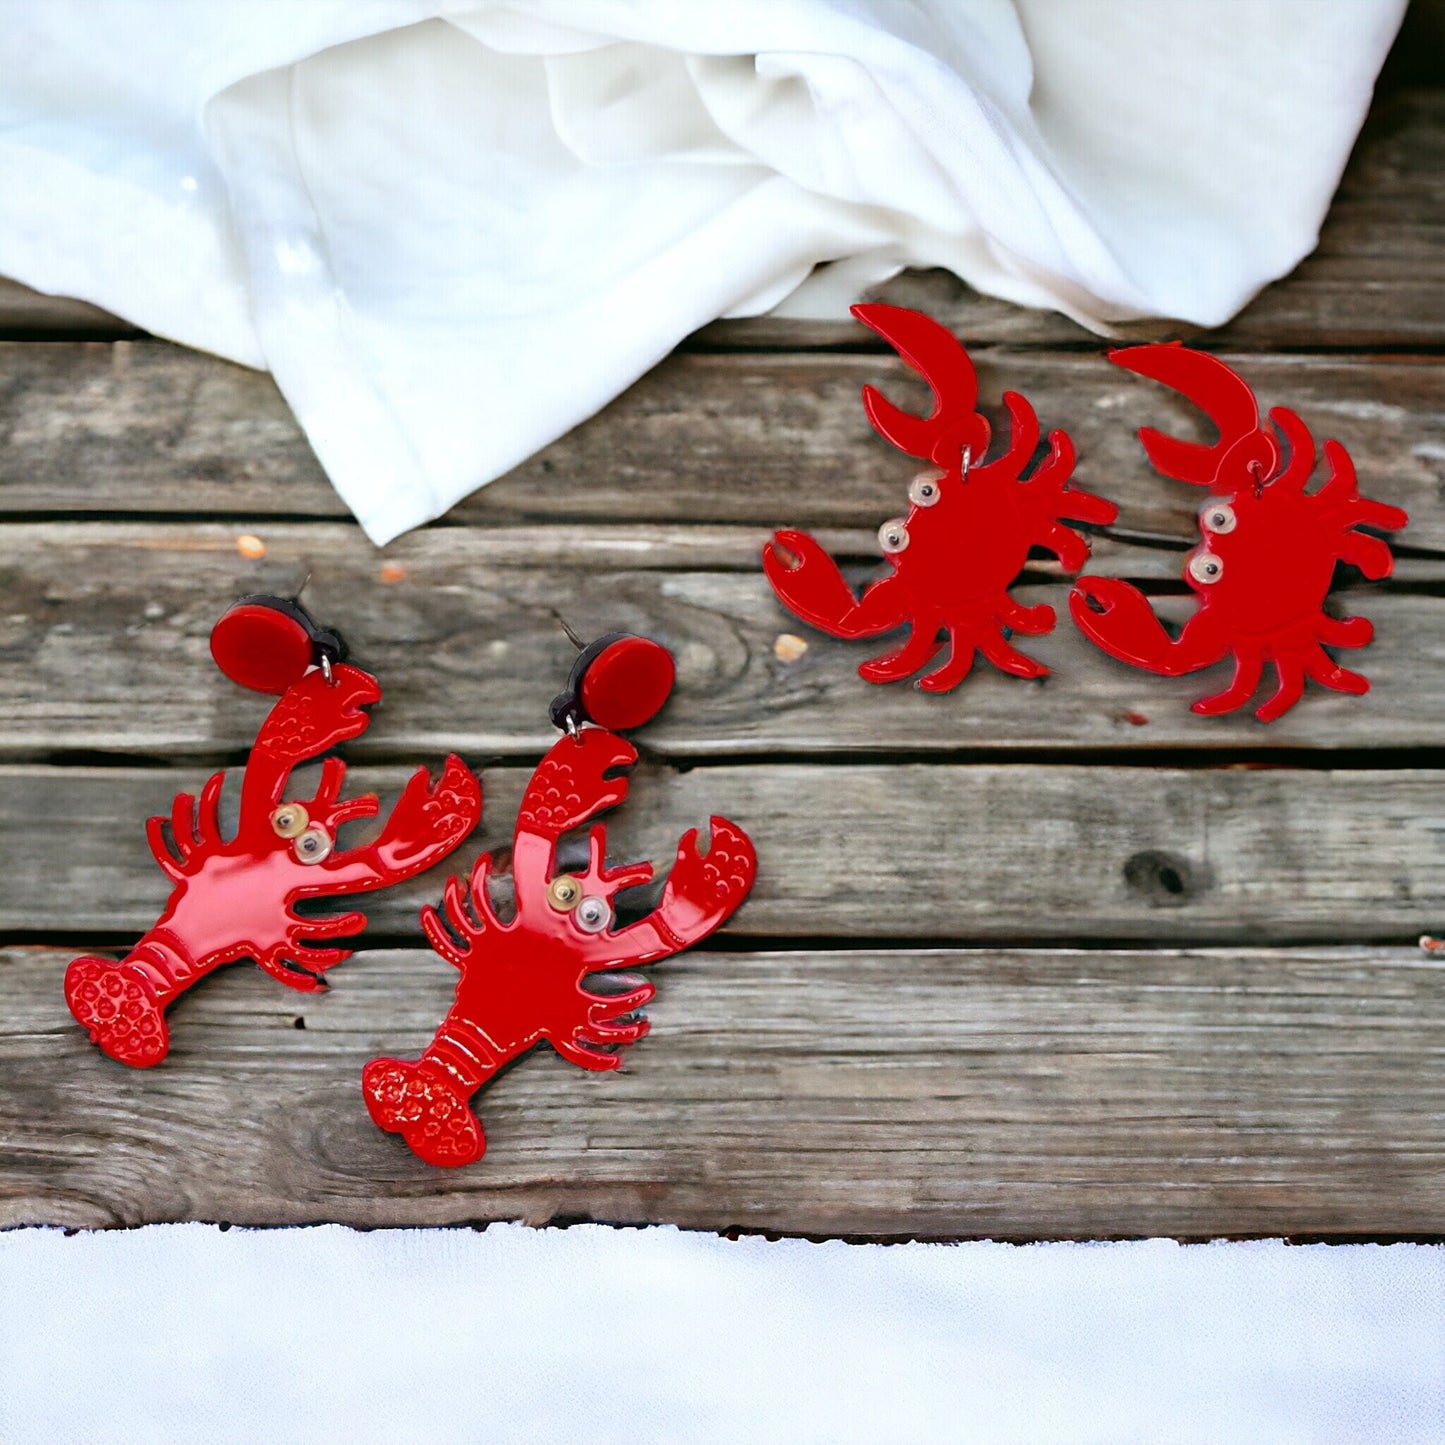 Cajun Earrings - Crab Earrings, Crawfish Earrings, Lobster Earrings, Handmade Earrings, Animal Earrings, Googly Eyes, Crawfish Boil, Crabs